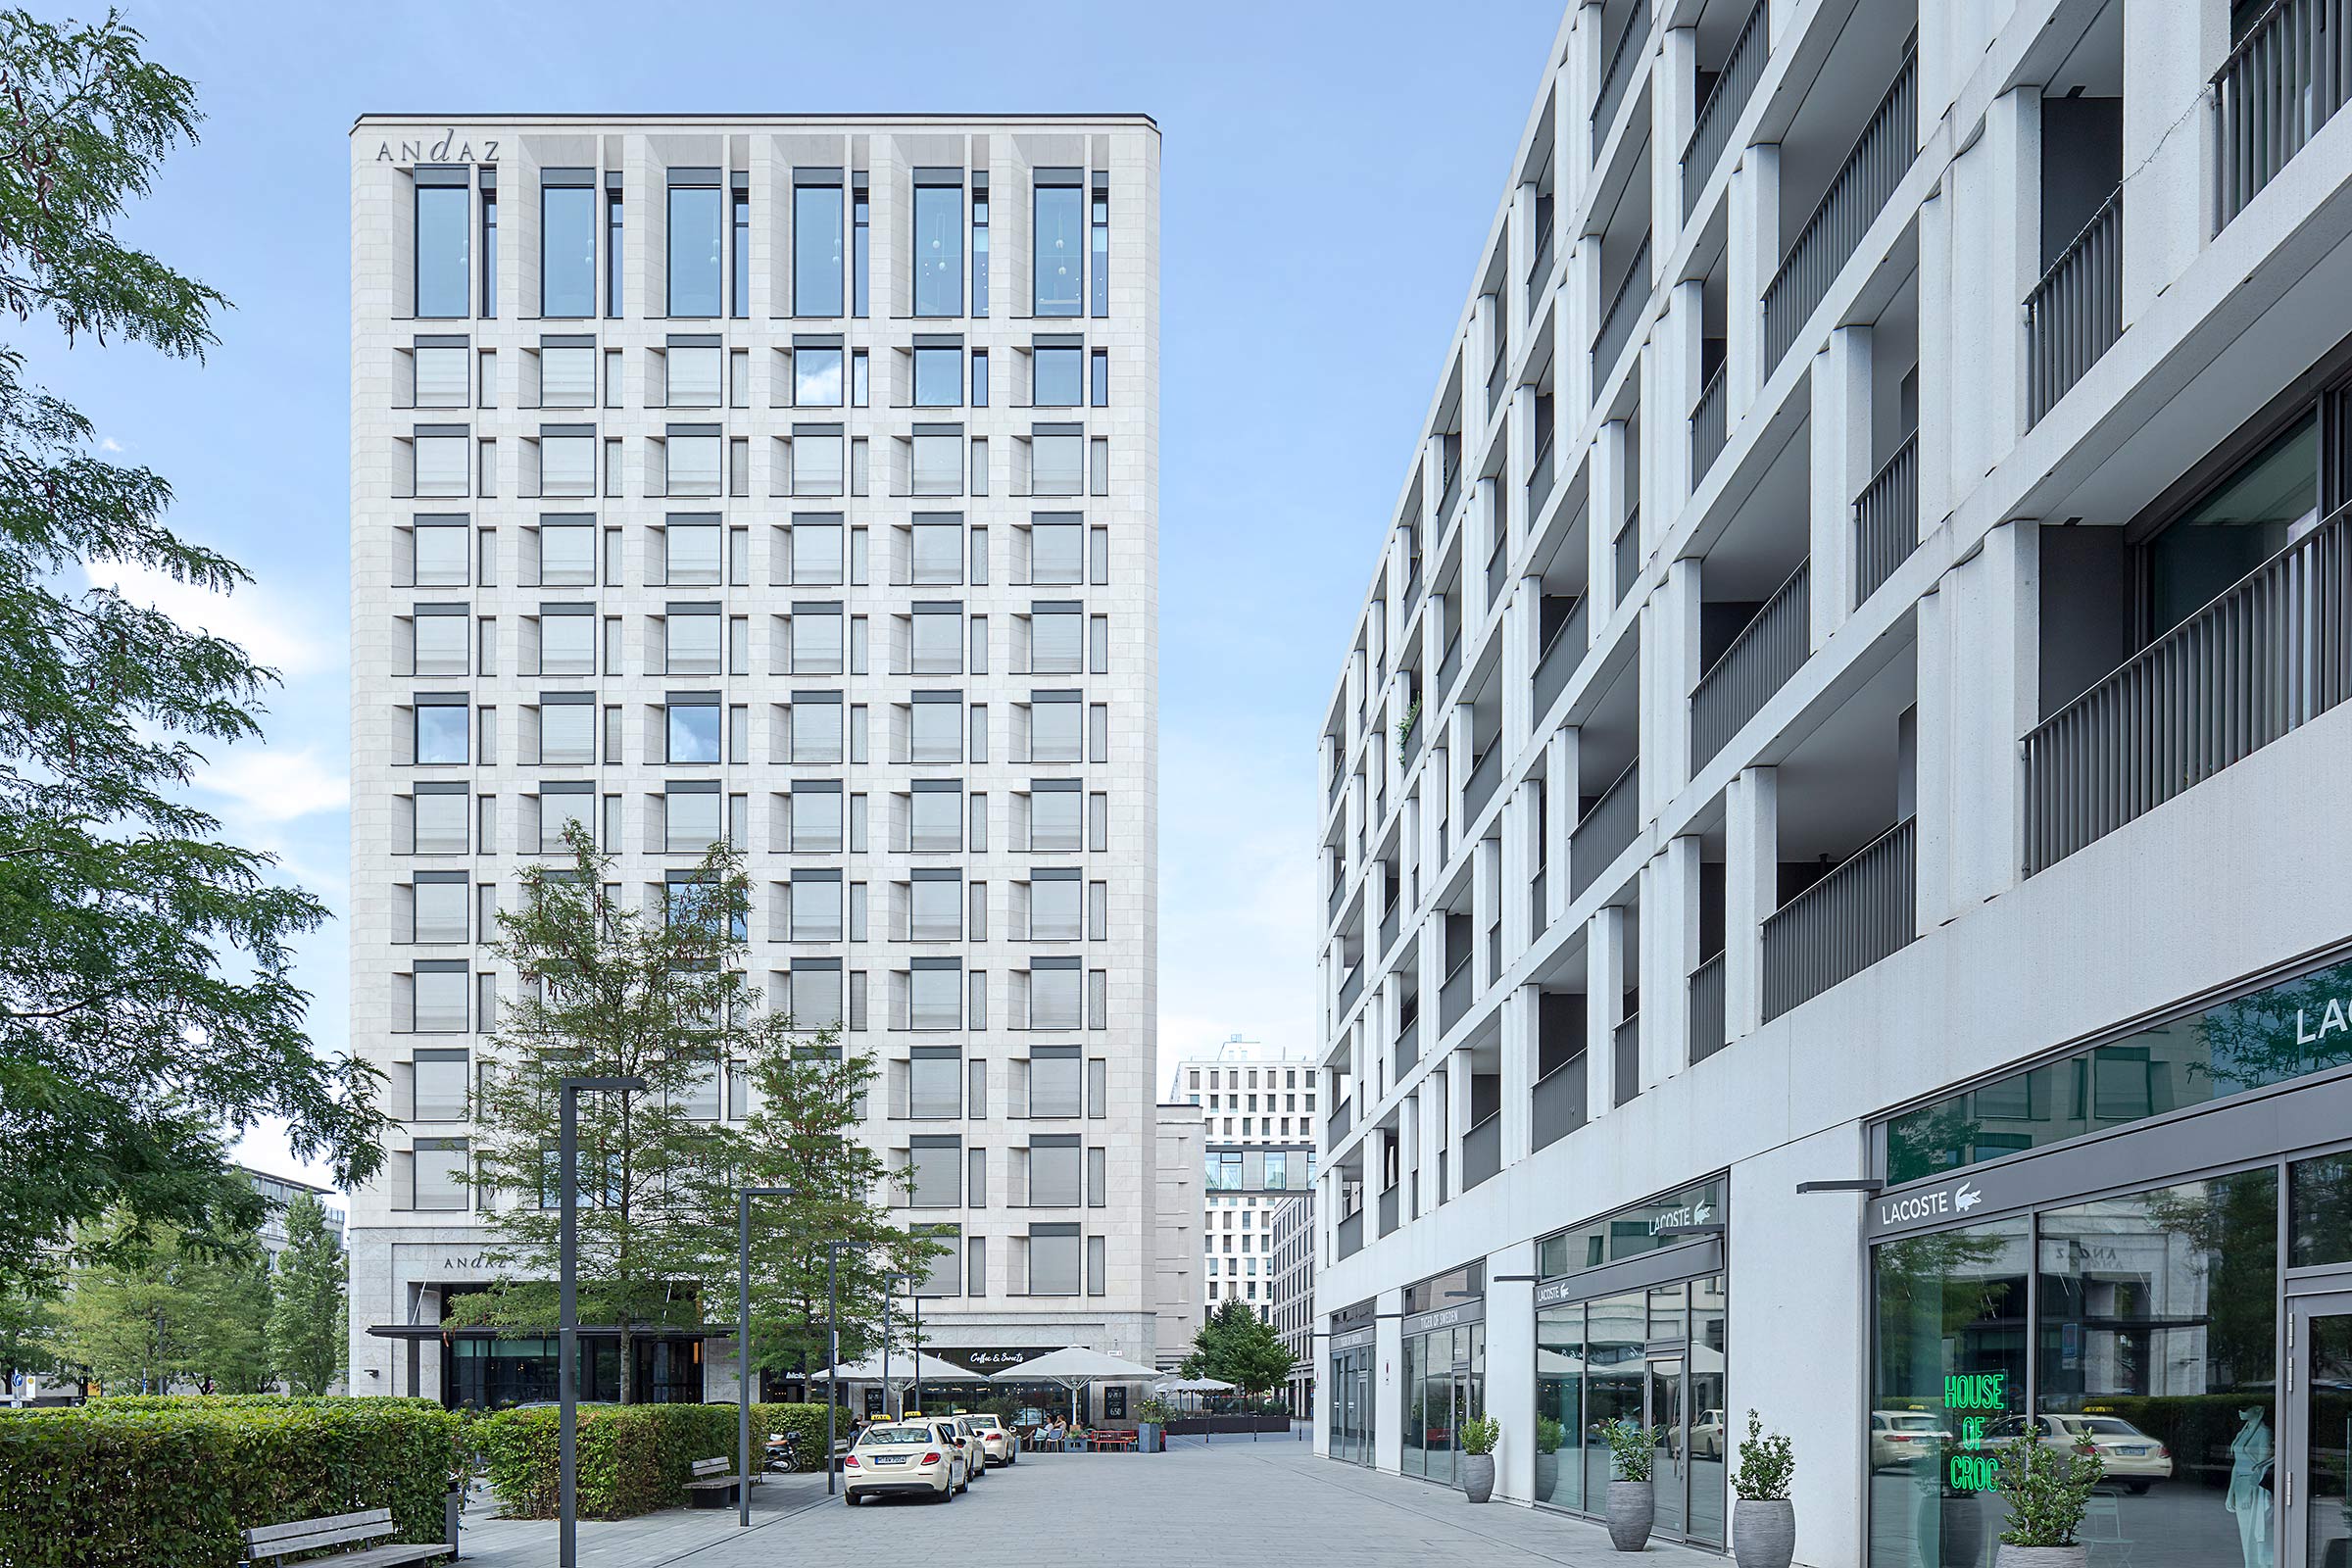 Architektur in München, das Schwabing Tor, Aussenansicht Hotel